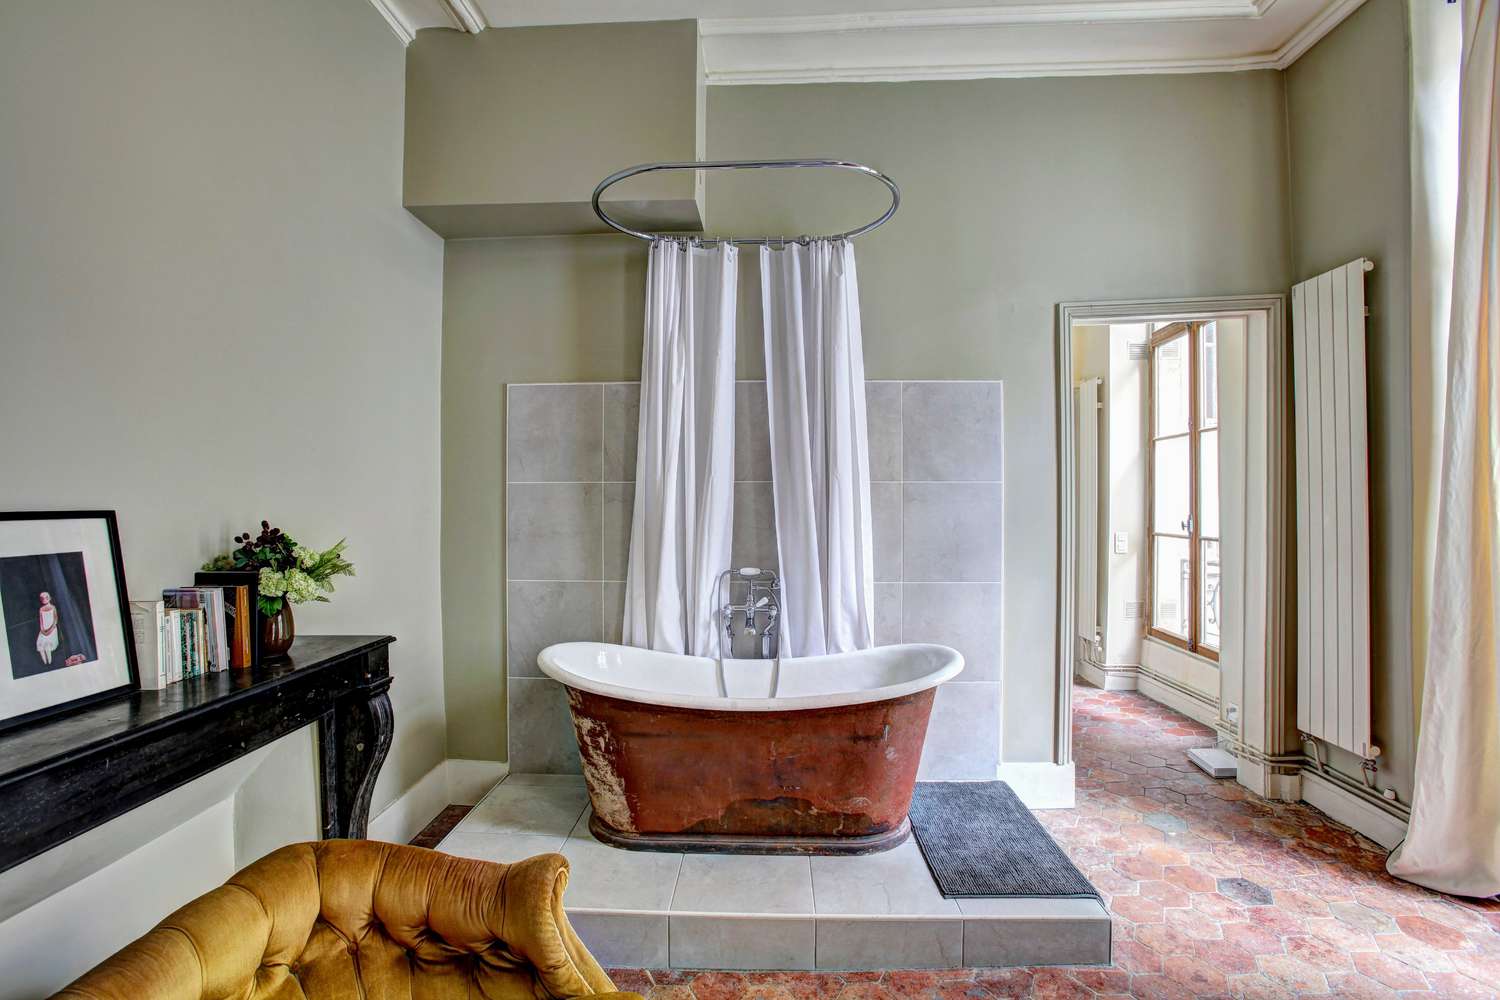 Bañera de cobre en habitación de estilo campestre francés